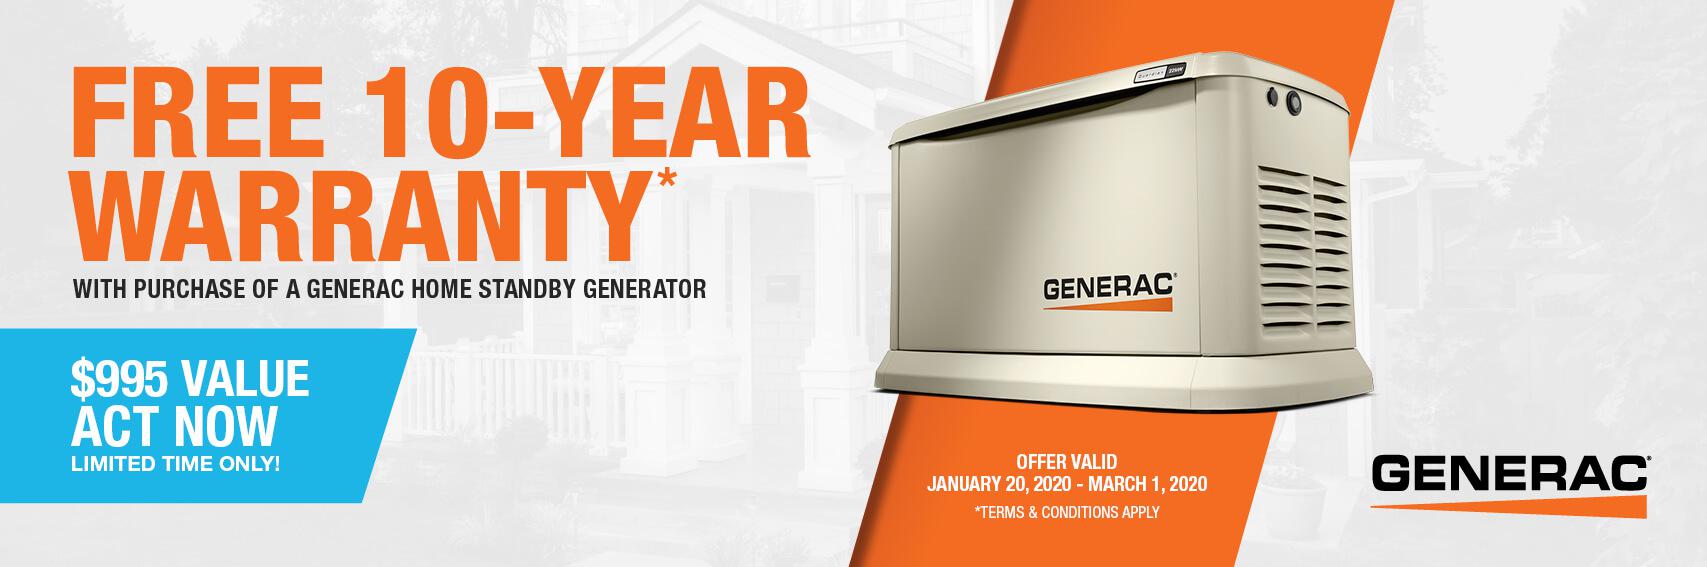 Homestandby Generator Deal | Warranty Offer | Generac Dealer | FREEHOLD, NJ